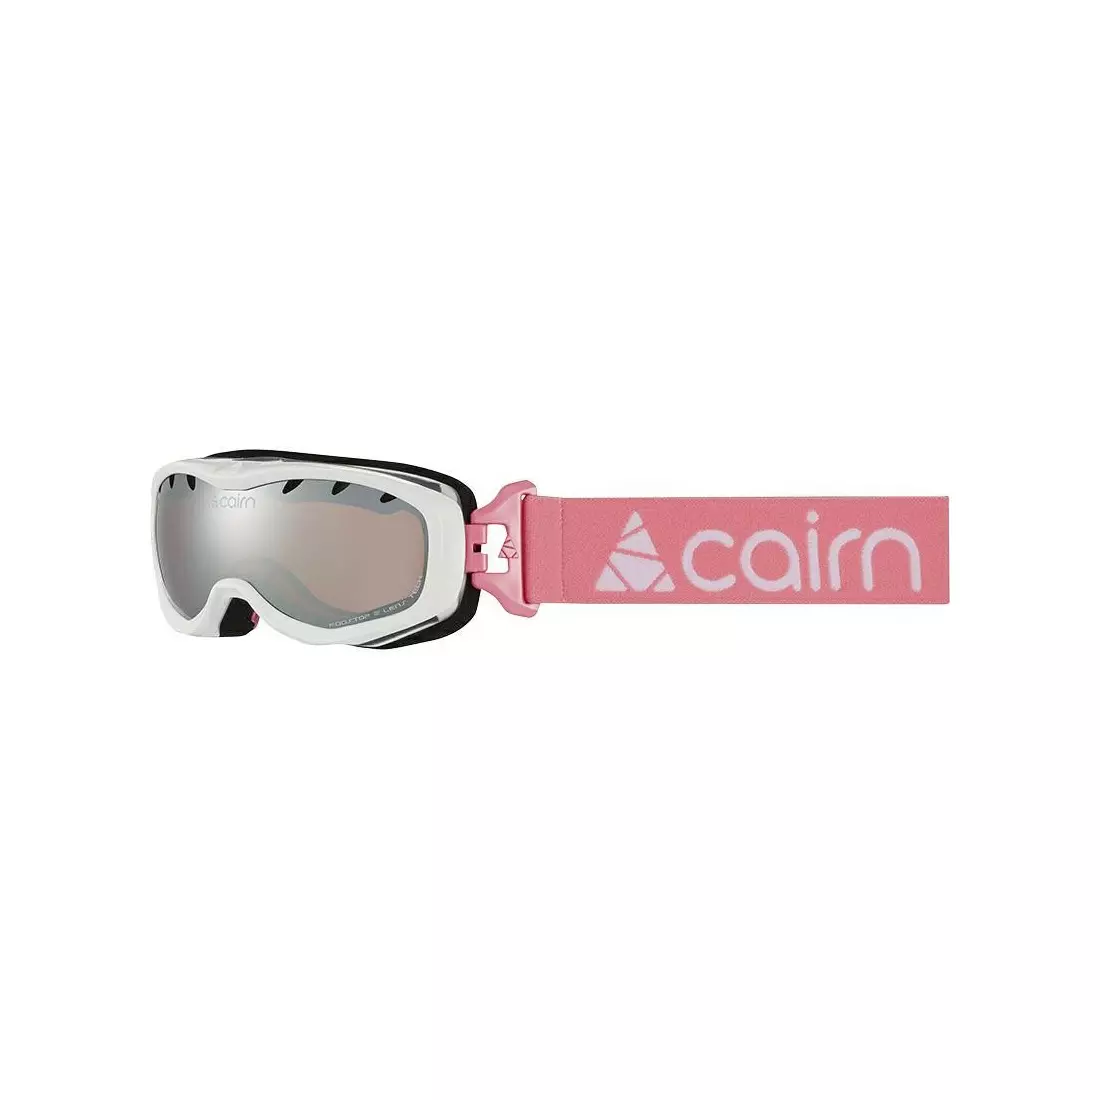 CAIRN detské lyžiarske/snowboardové okuliare RUSH SPX3000 Shiny White Candy Pink 